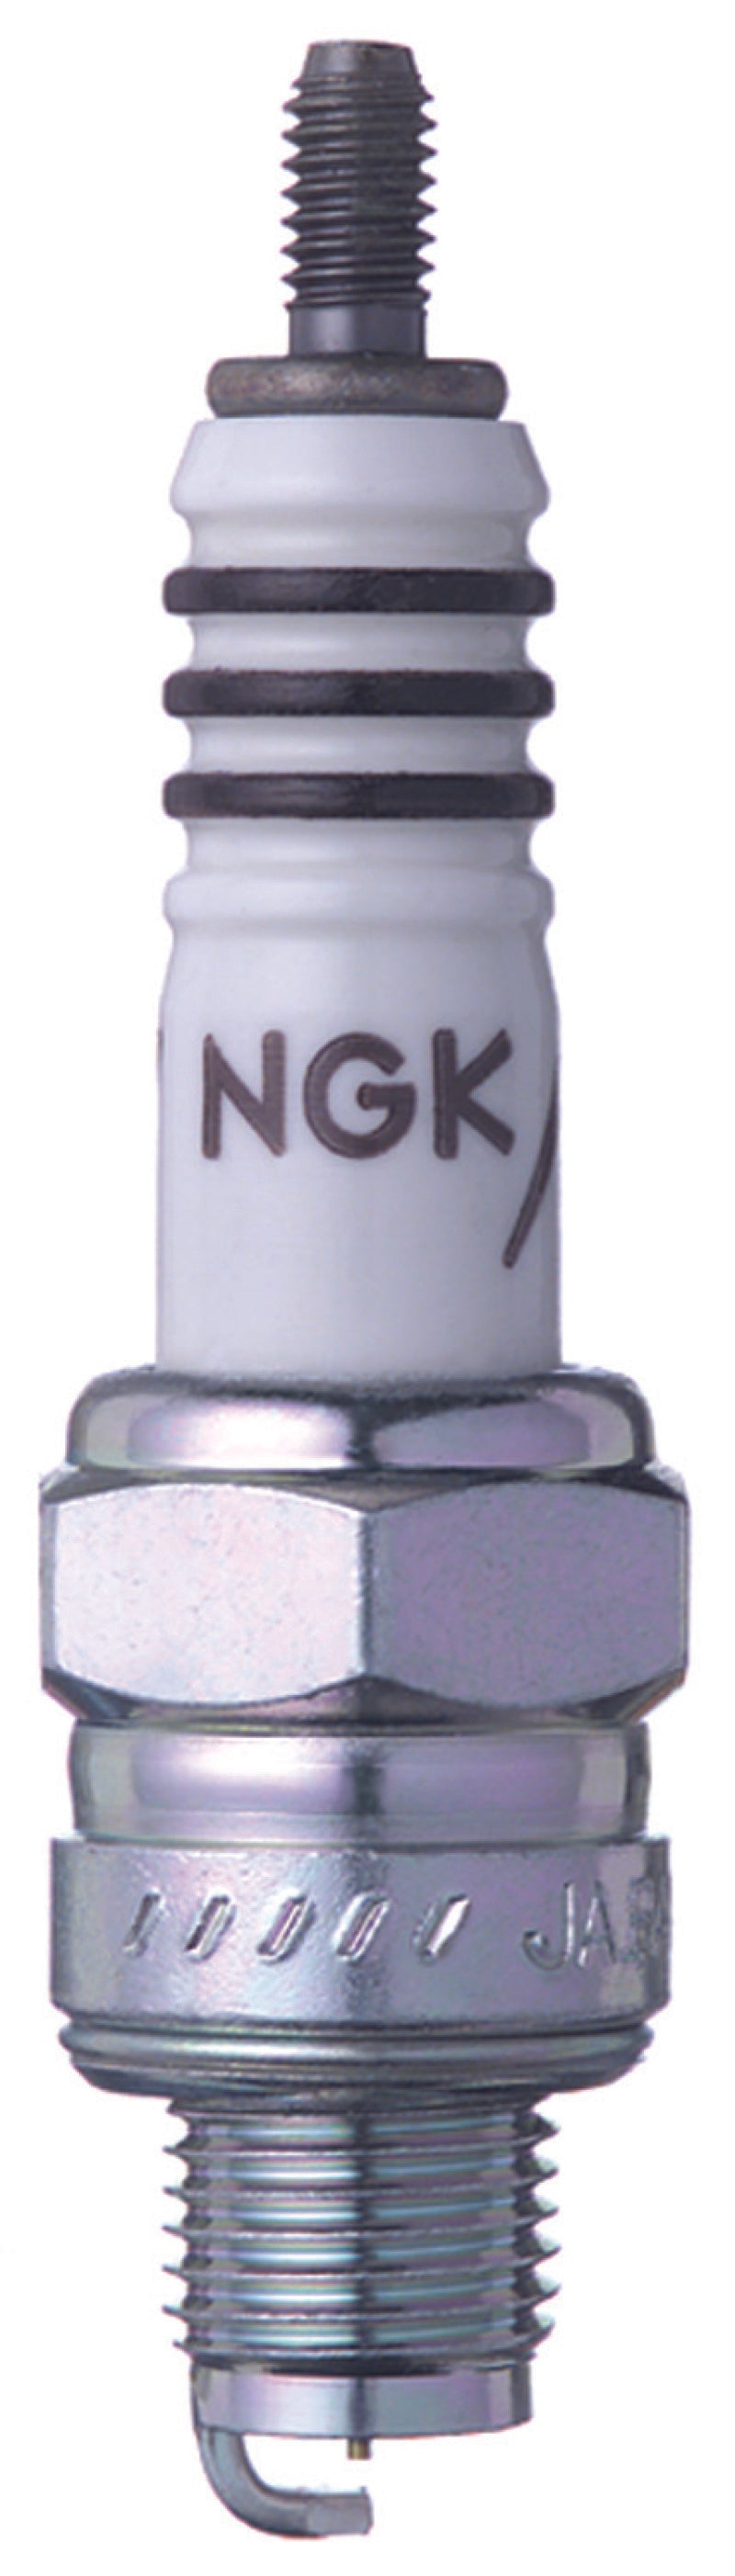 NGK Iridium IX Spark Plug Box of 4 (CR6HIX)